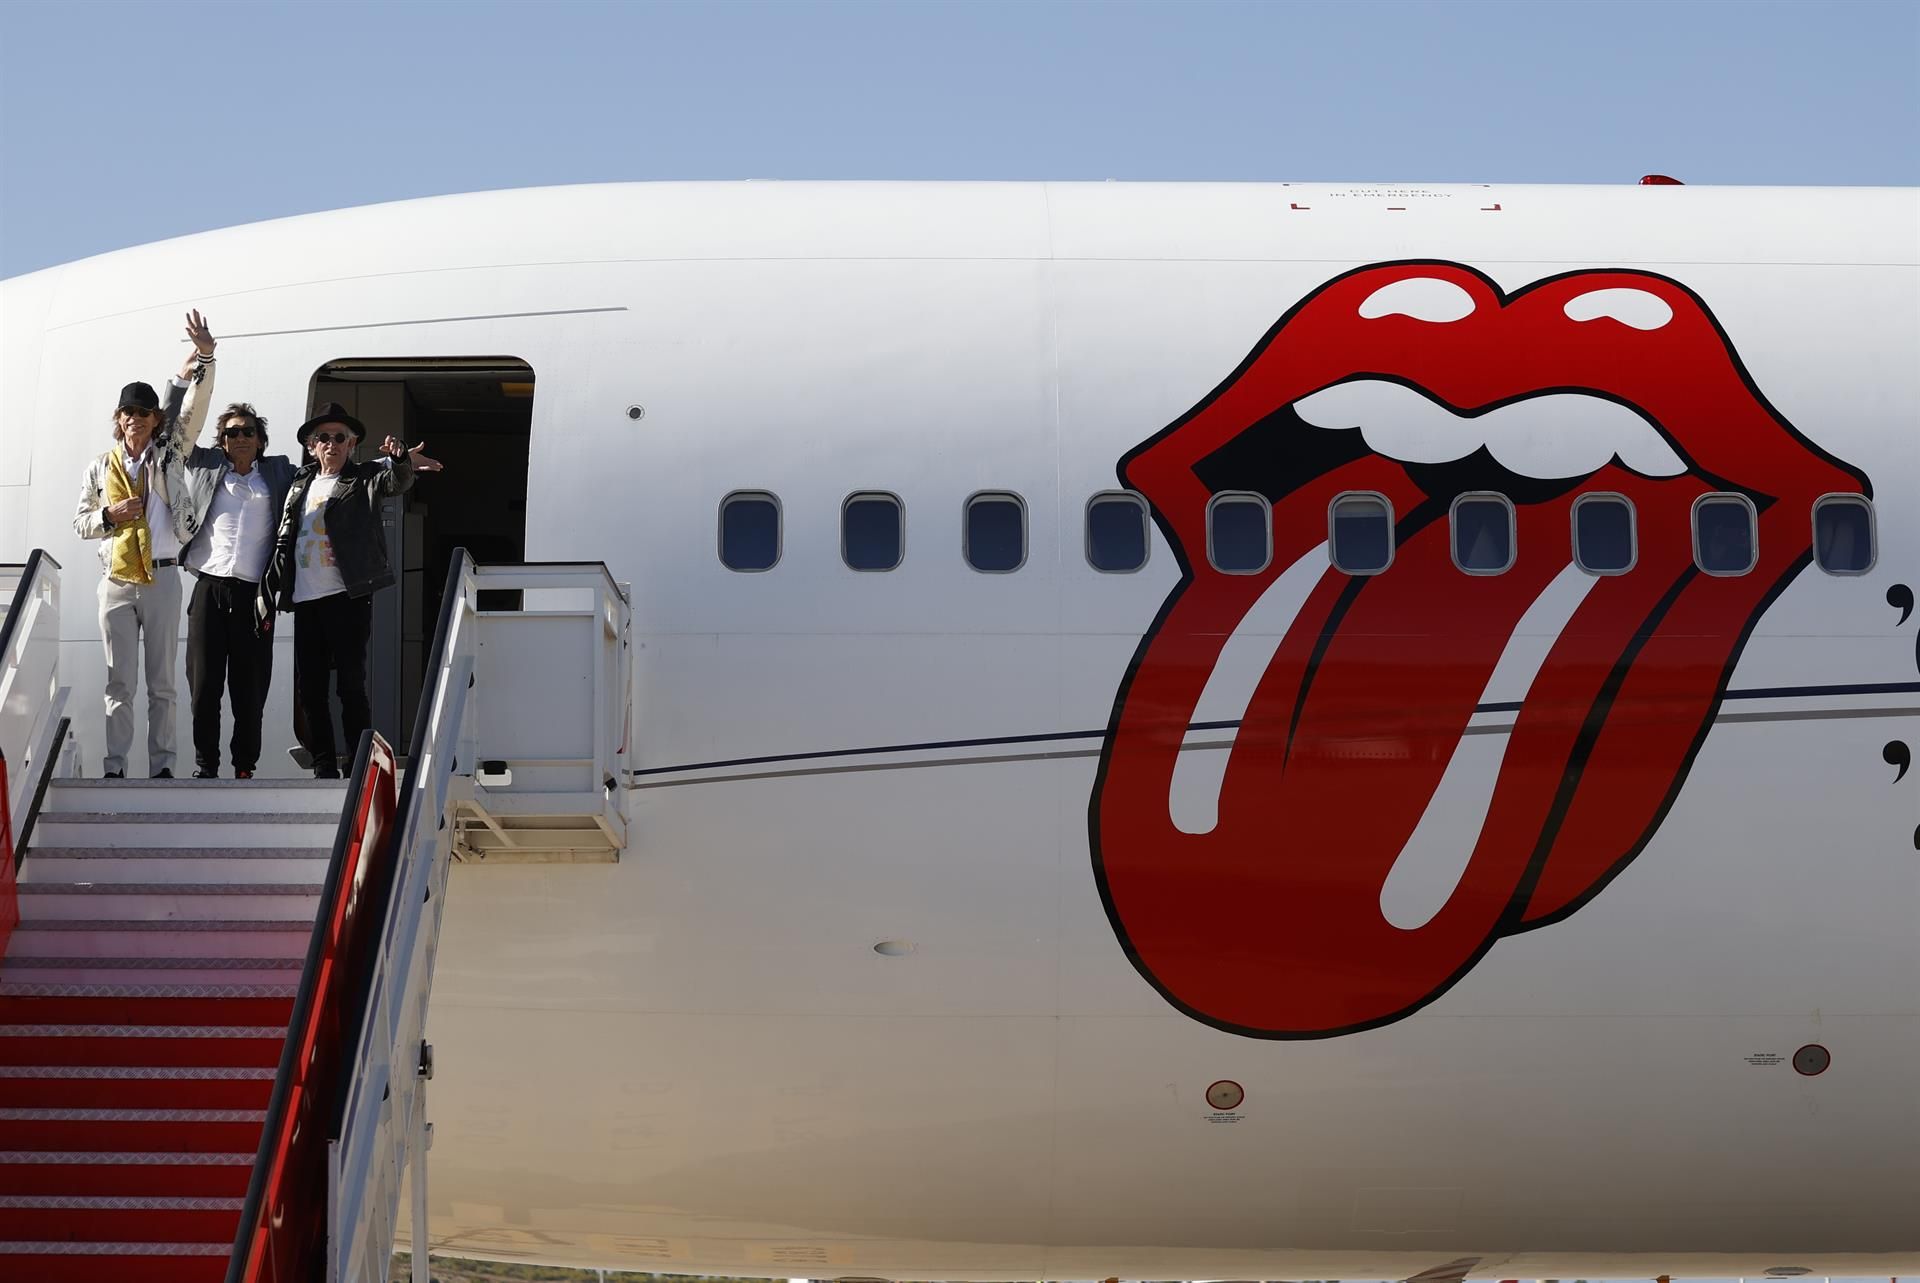 The Rolling Stones aterrizan en Madrid a una semana del inicio de su posible "última gira"